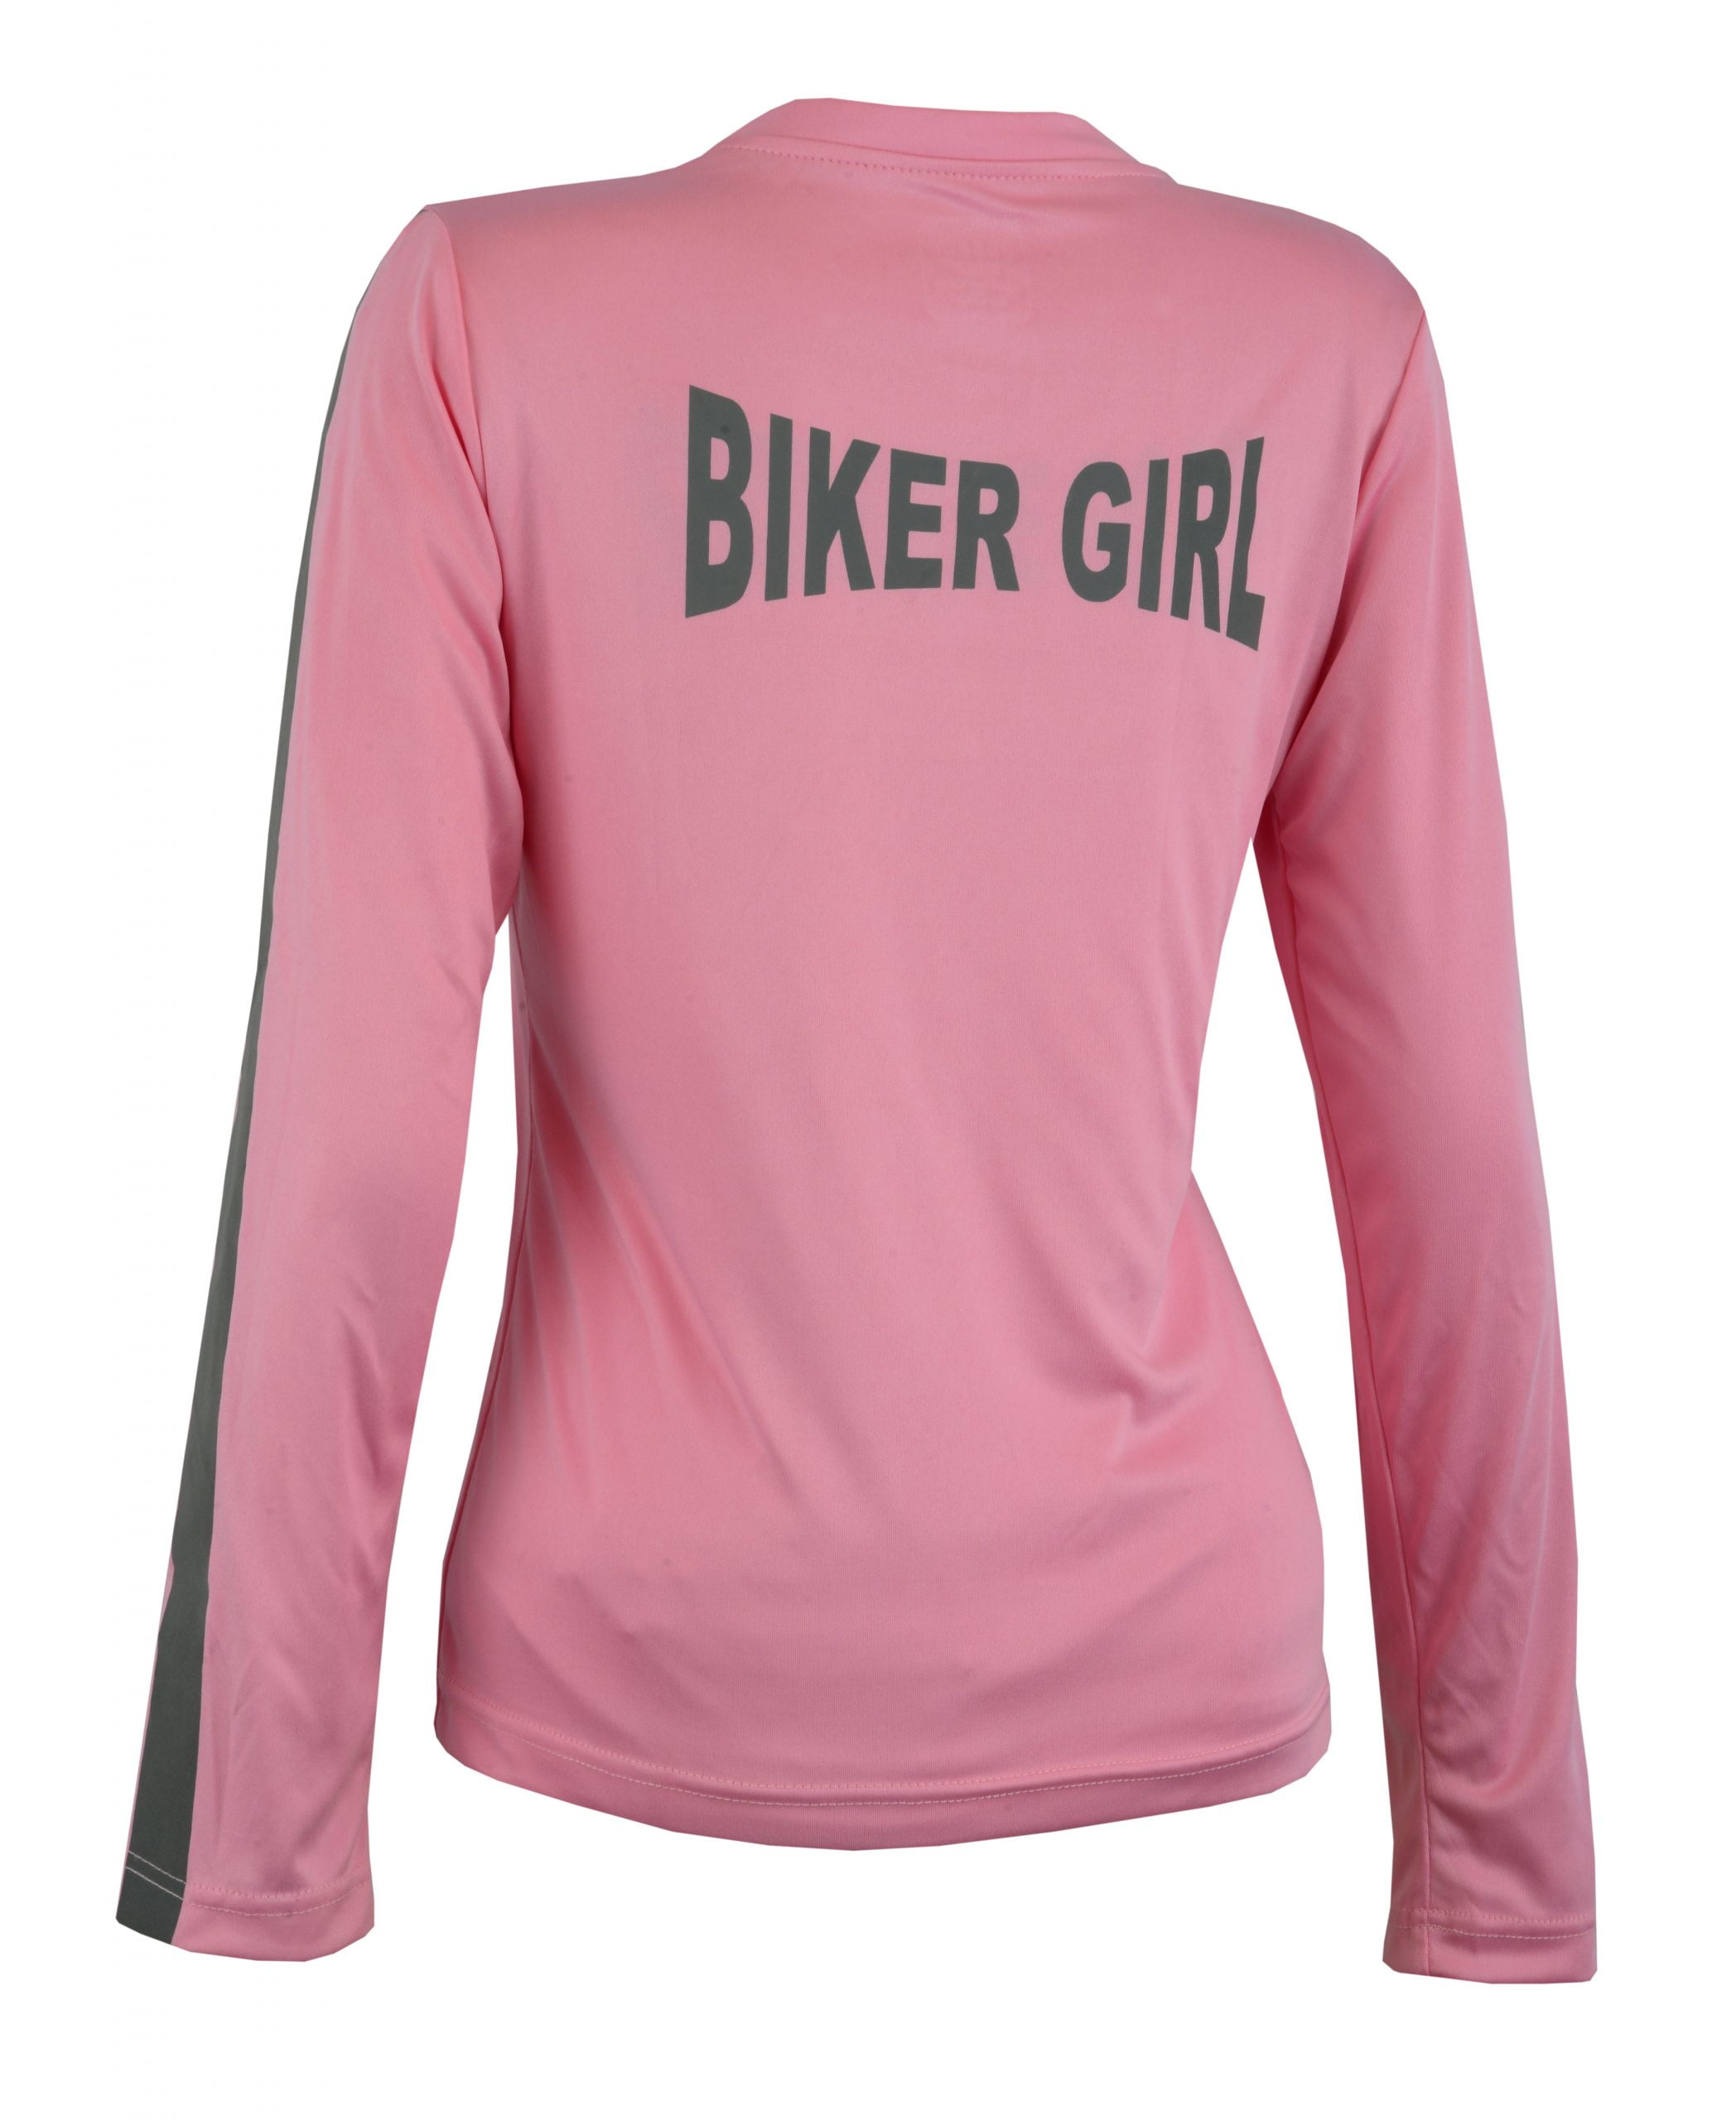 Women's Reflective Shirt -Biker Girl -Pink